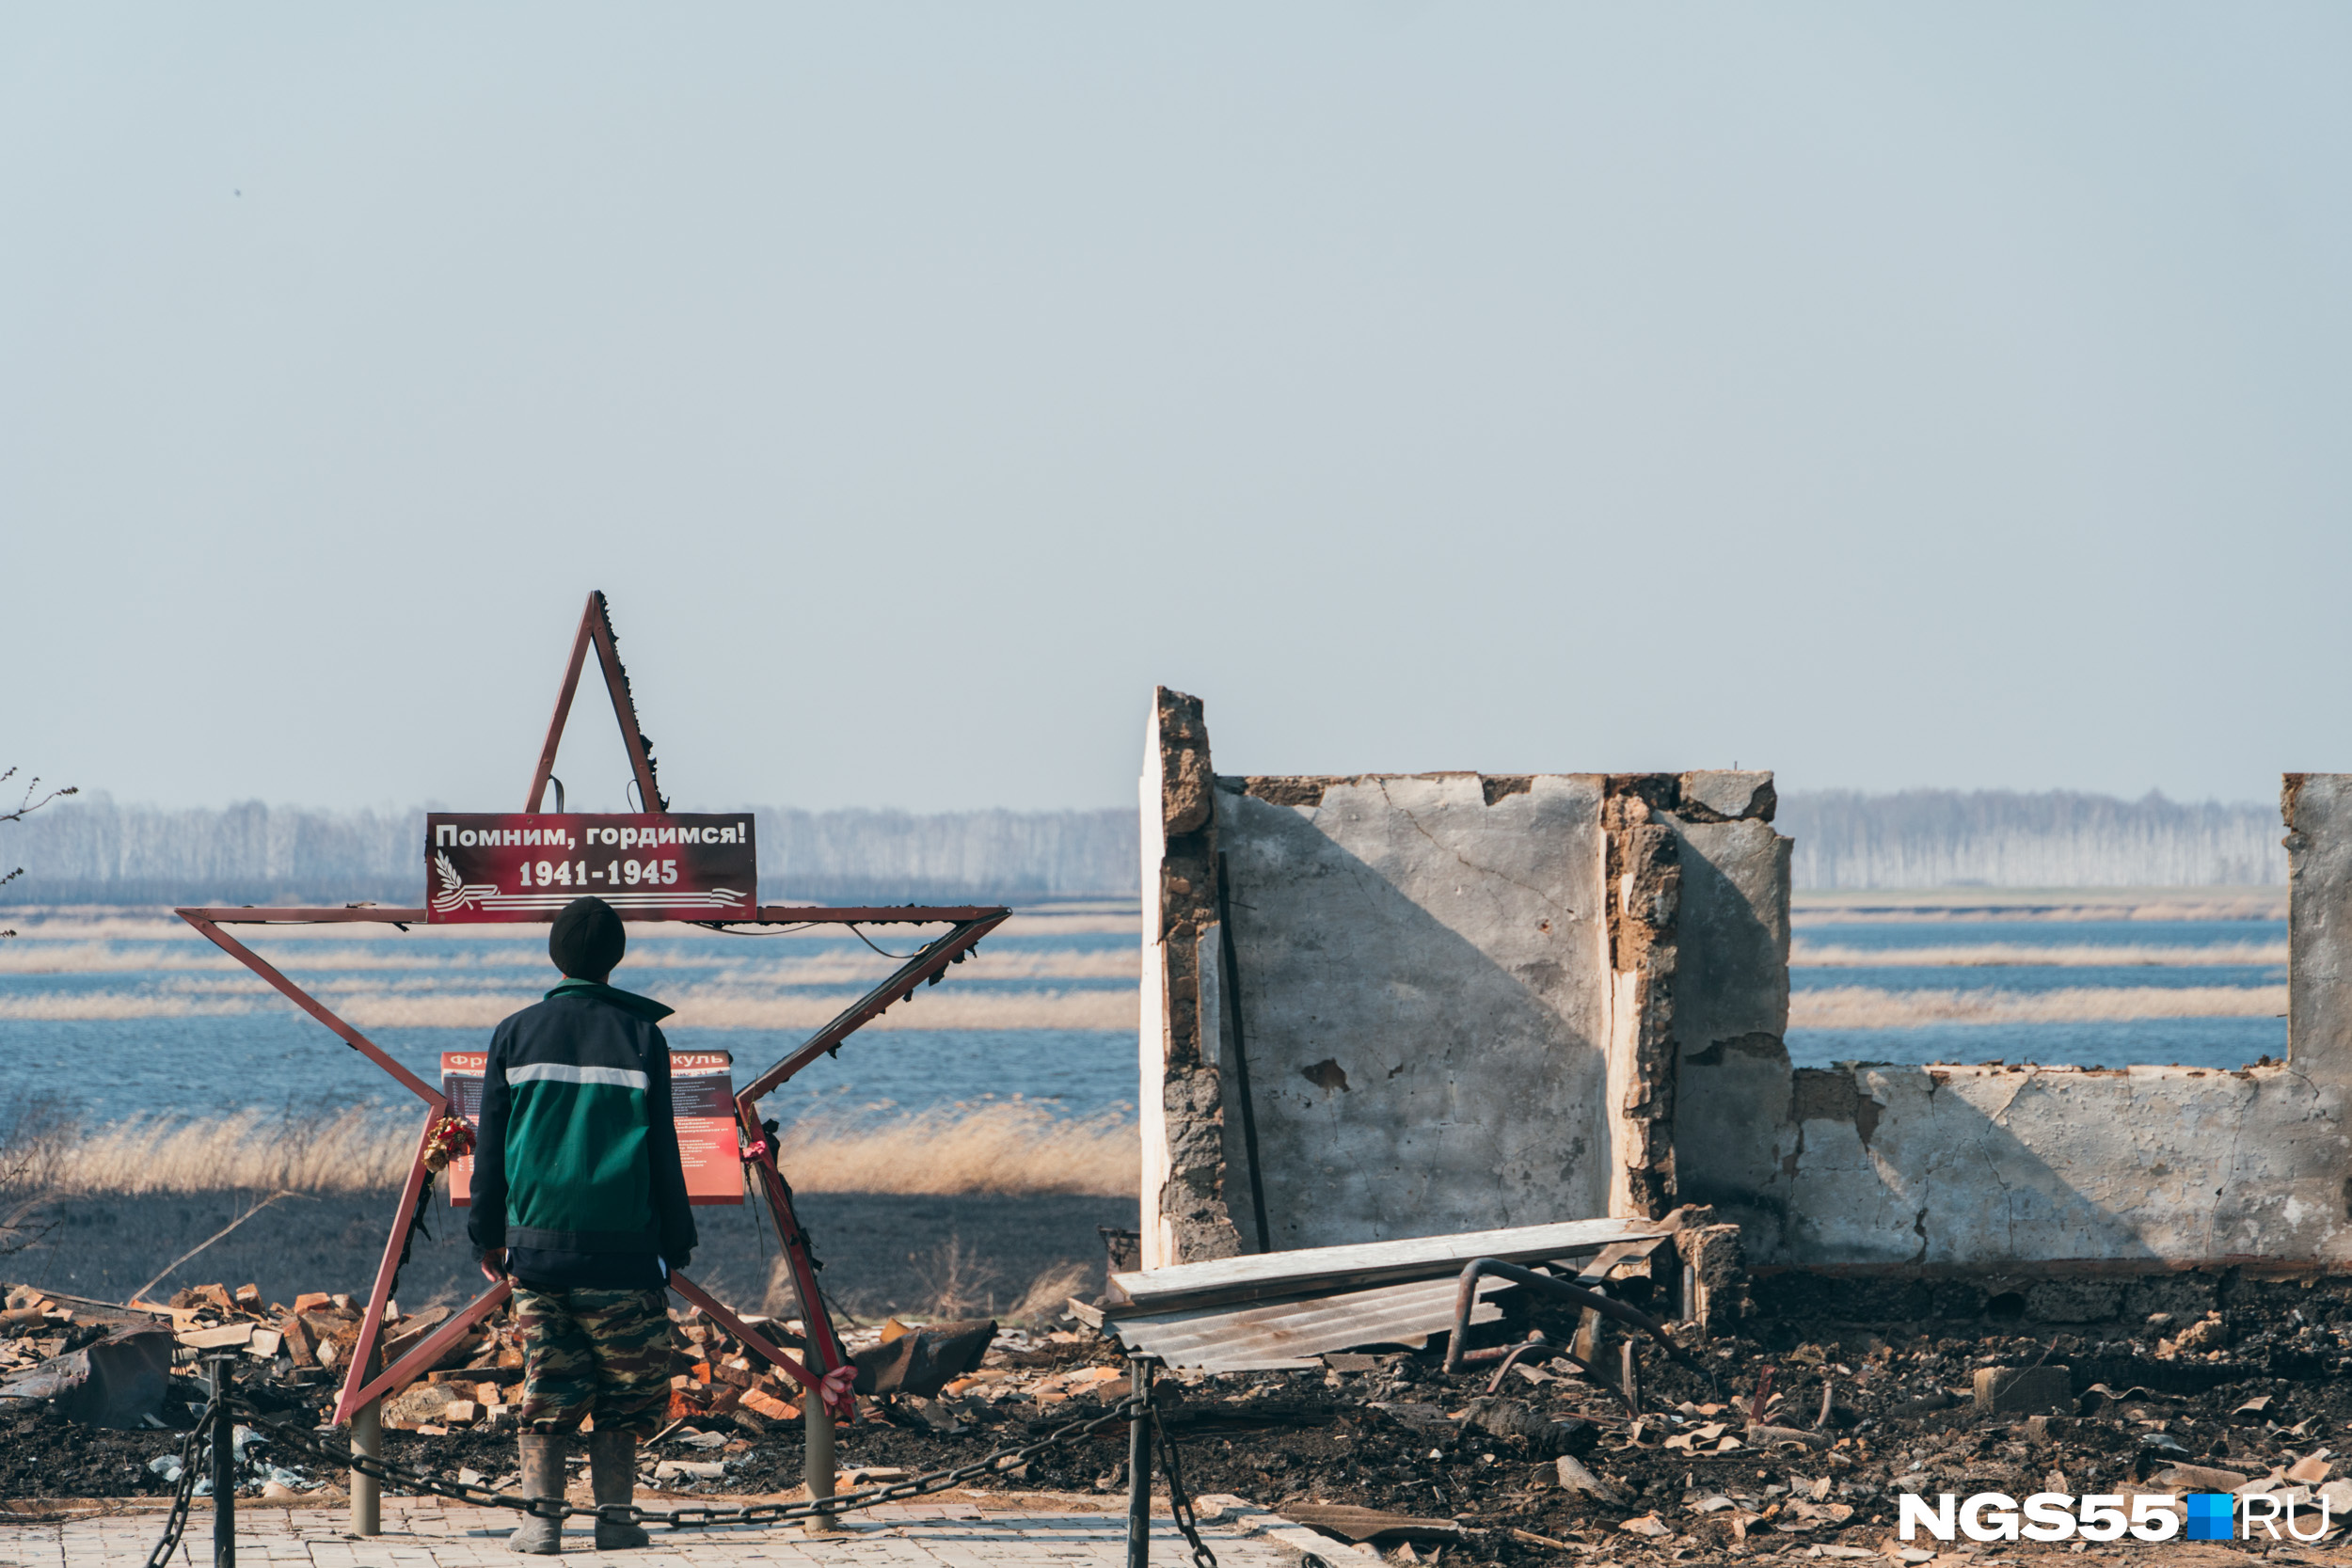 Как сгорела деревня Каракуль Большереченского района 6 мая 2021 года:  фоторепортаж - 10 мая 2021 - 116.ru